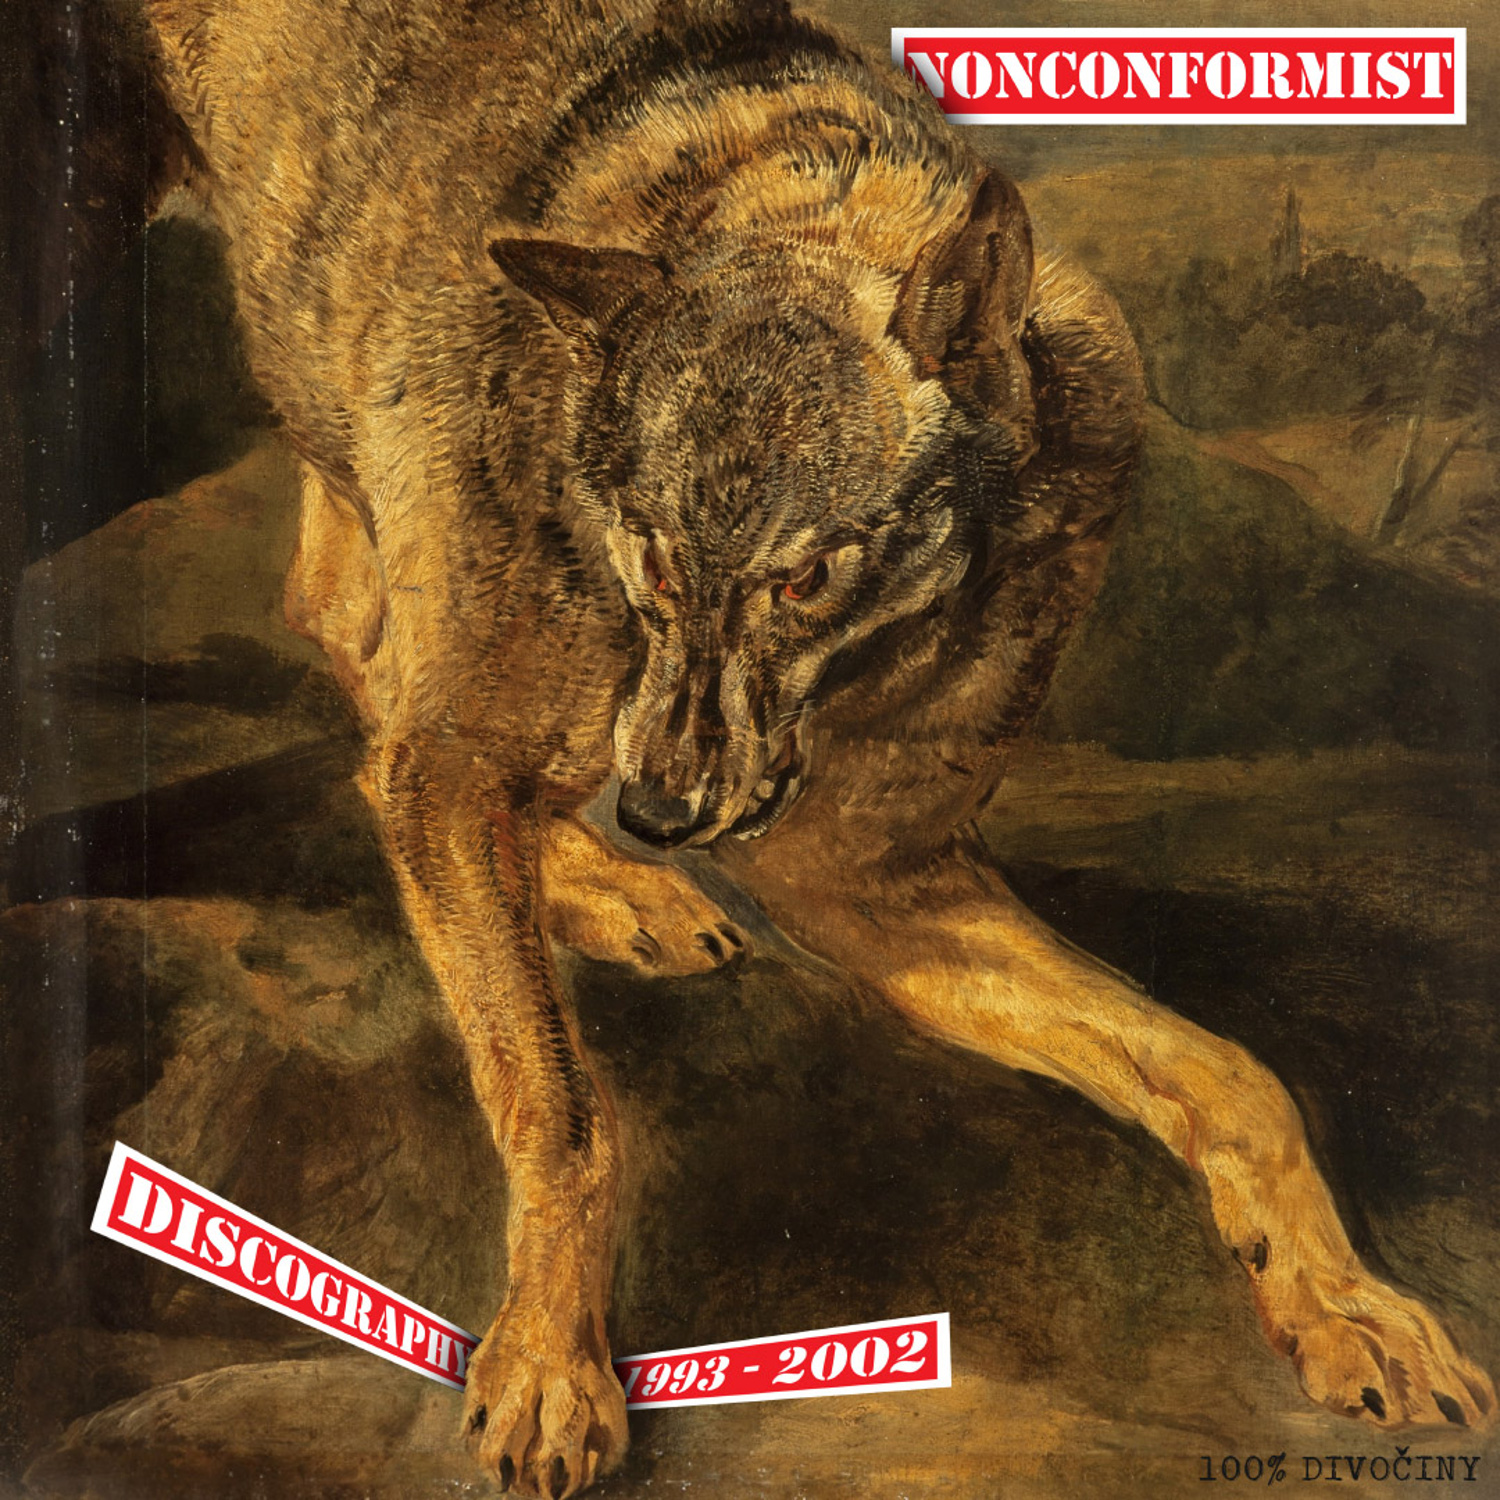 Nonconformist – Discography 1993-2002